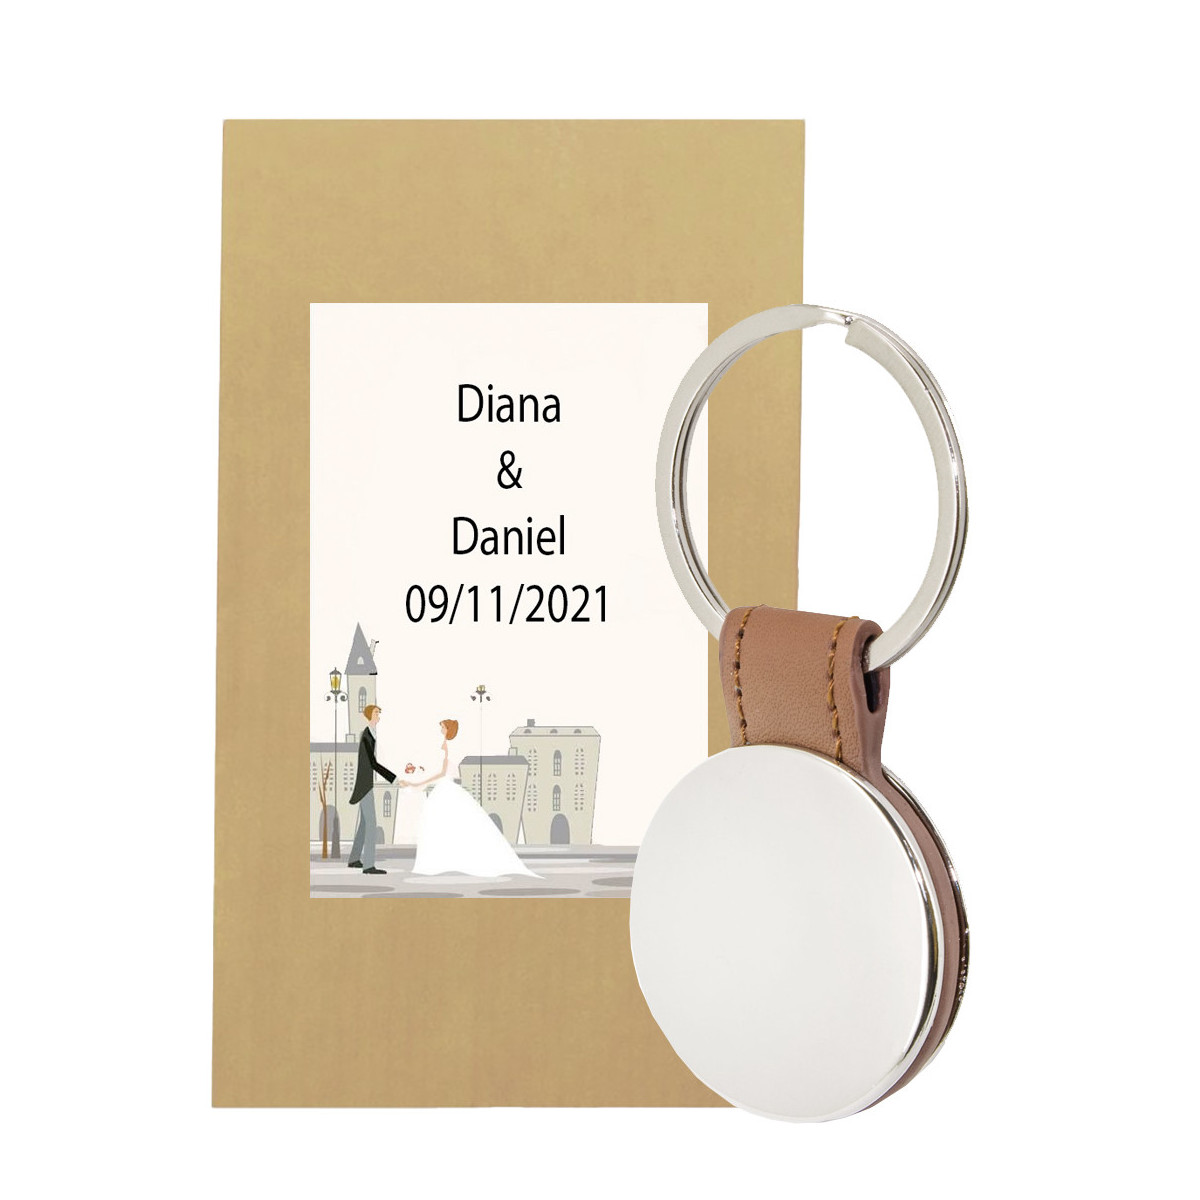 Porte clés rond en similicuir avec badge miroir personnalisé avec enveloppe cadeau et adhésif pour mariage